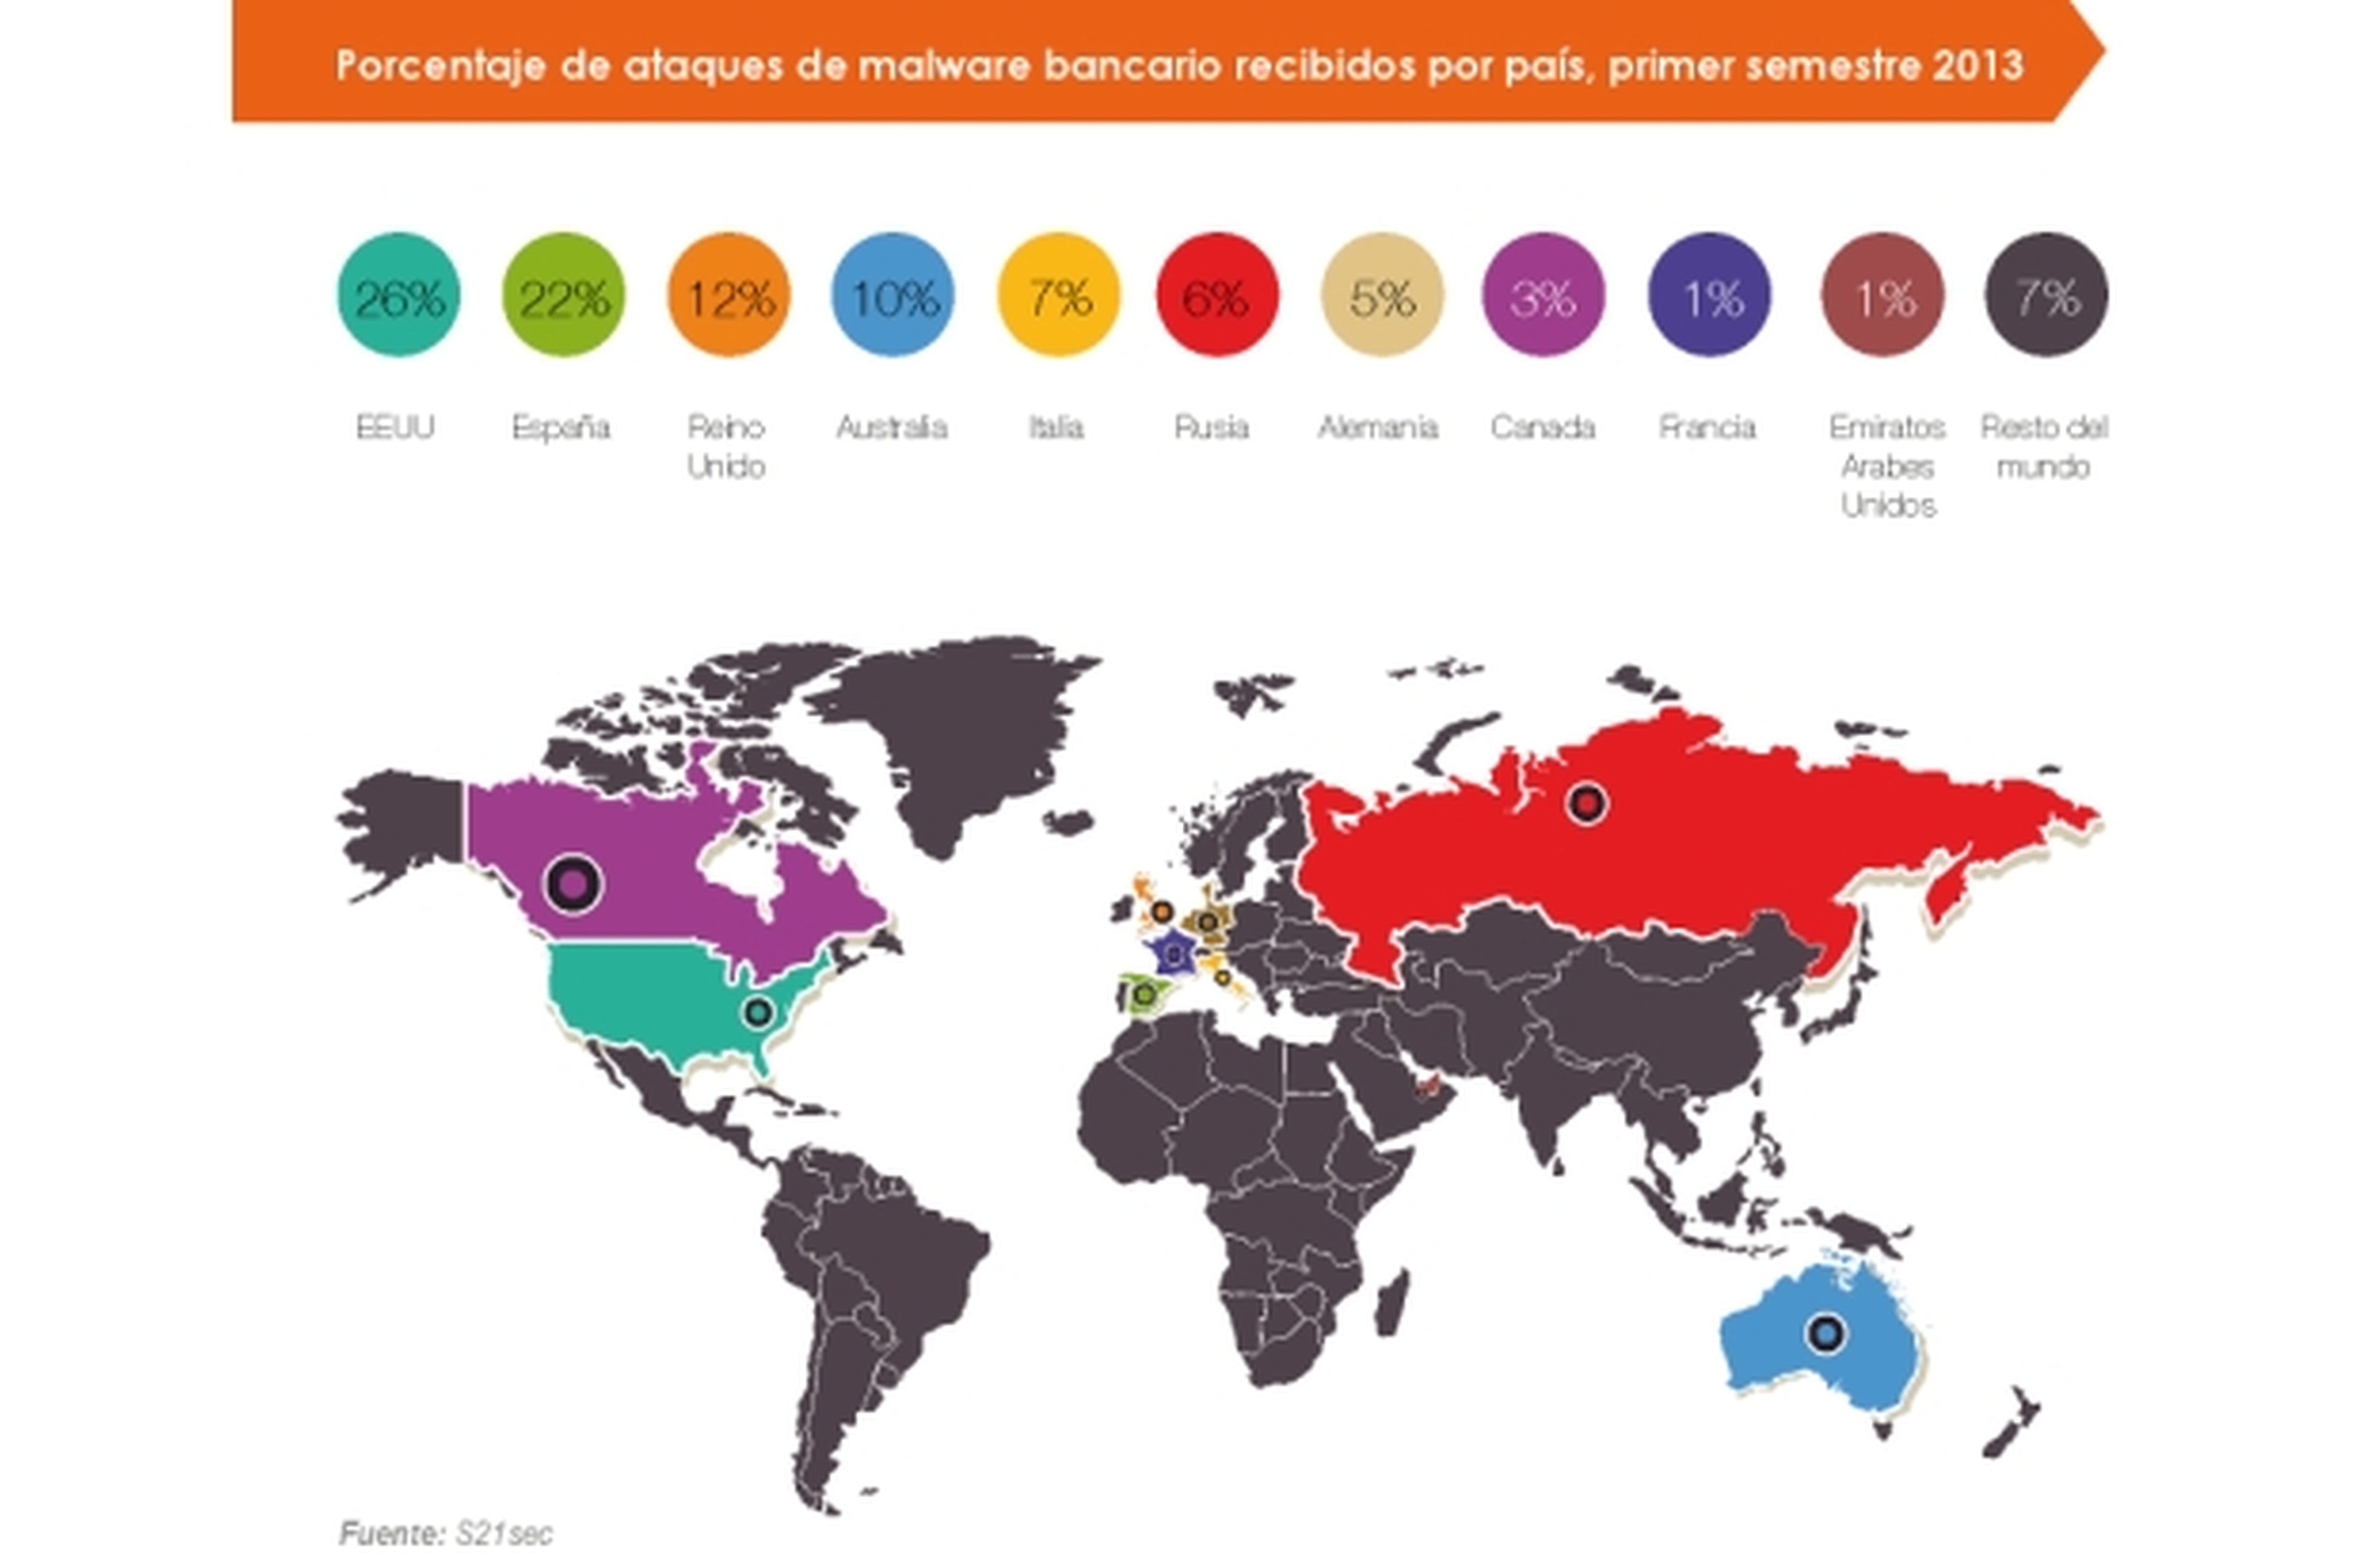 S21sec asegura que España es el segundo país del mundo con más ciberataques